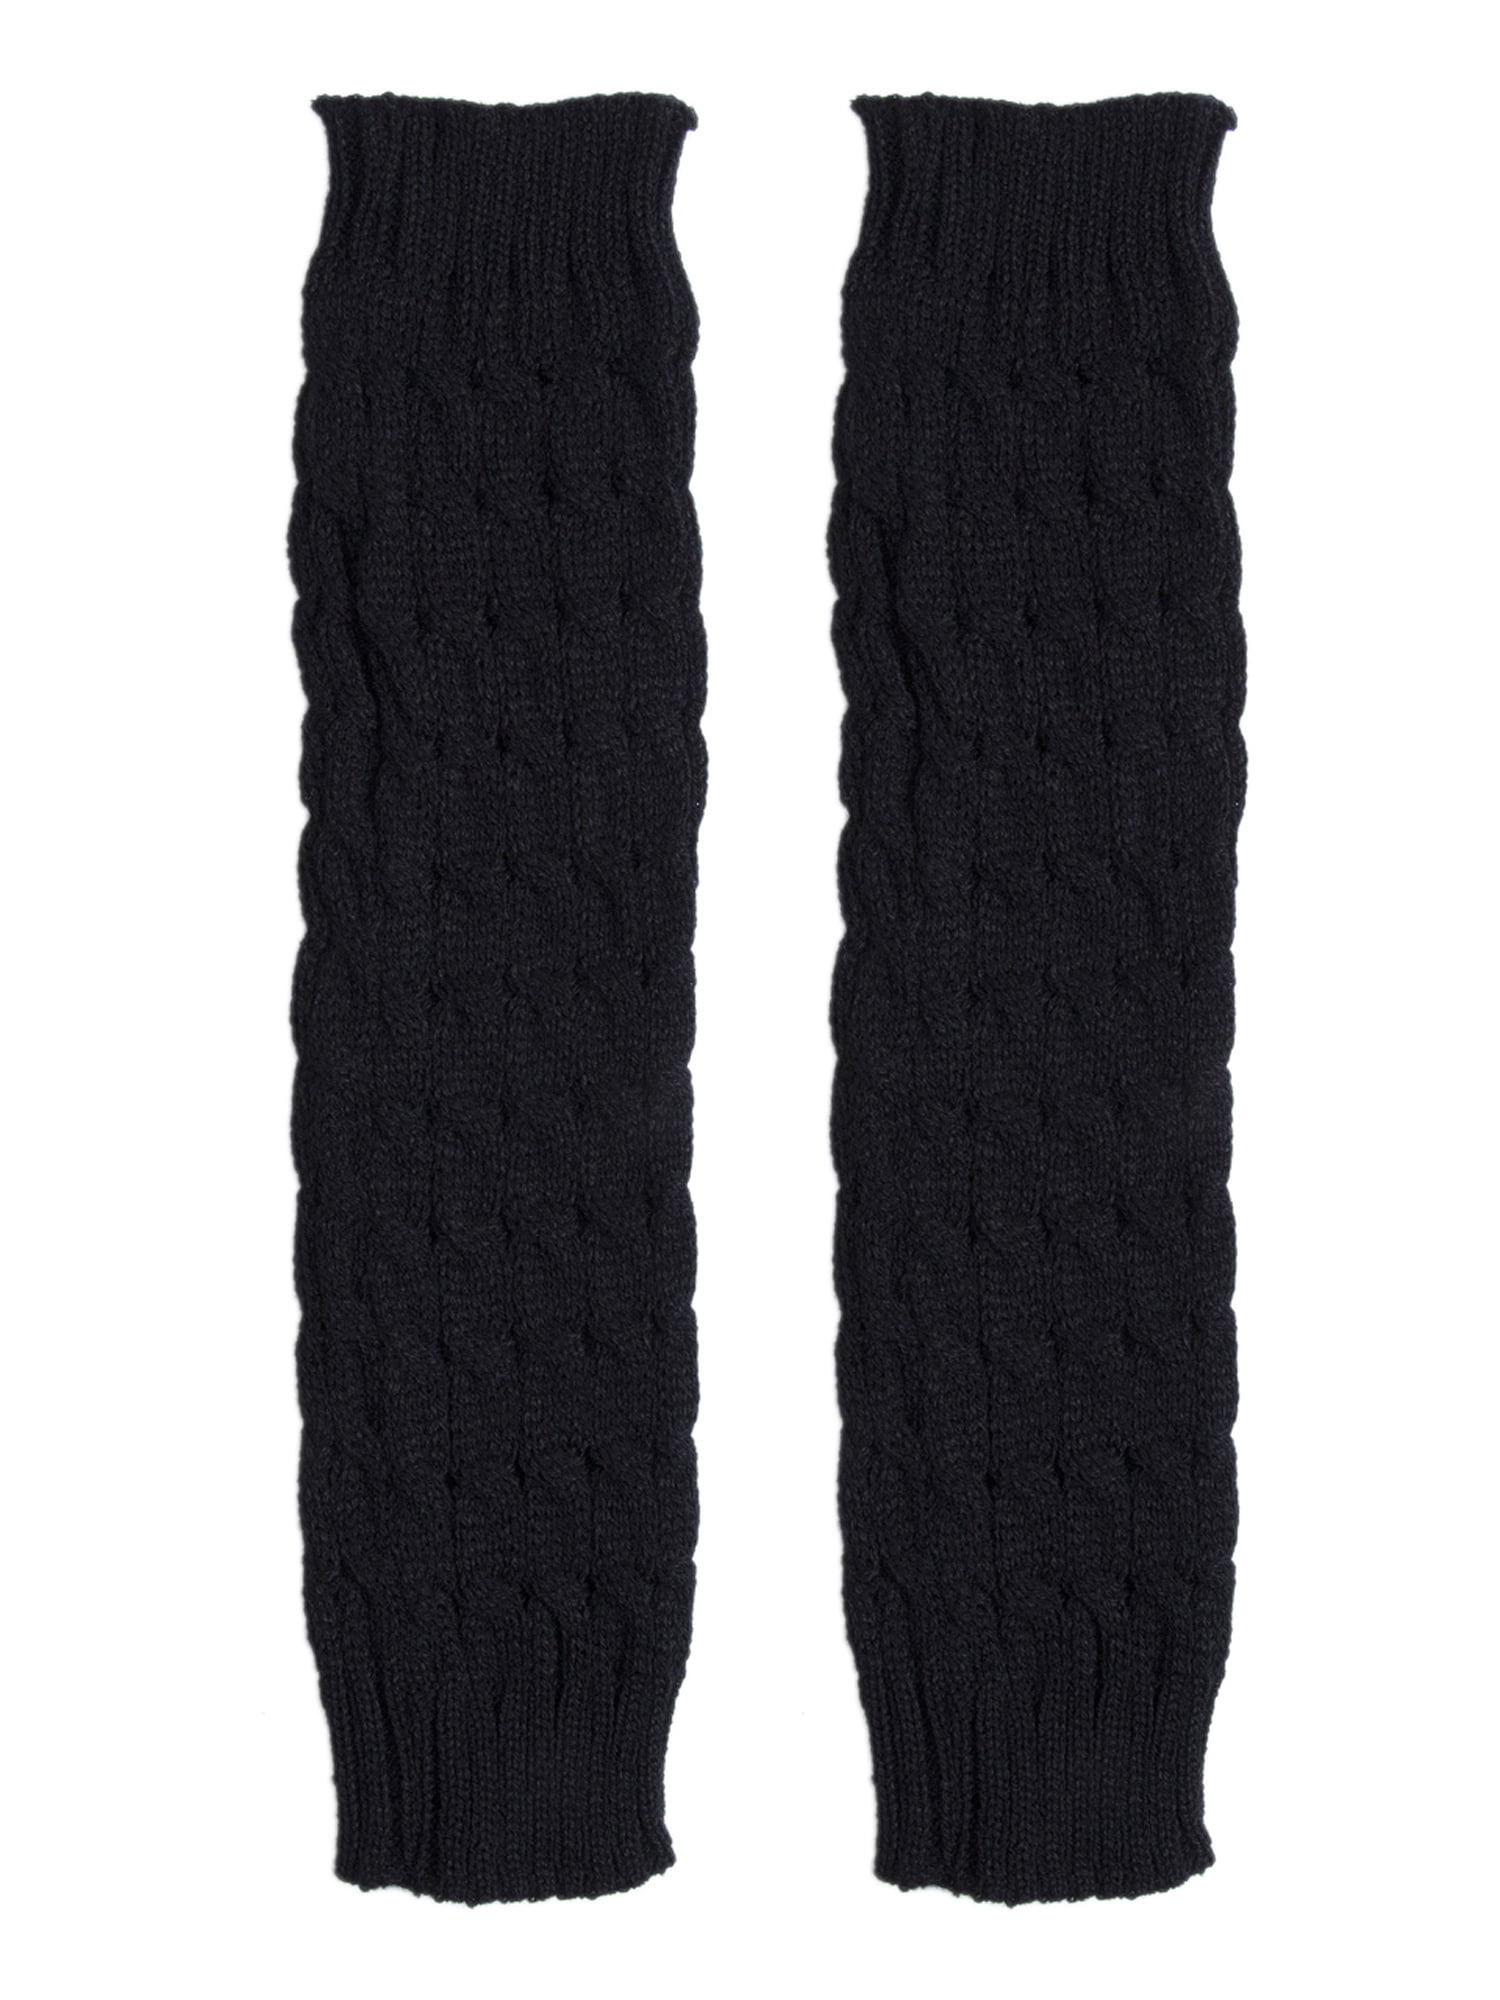 LisenraIn Women Winter Knit Crochet High Knee Leg Warmers Boot Socks ...